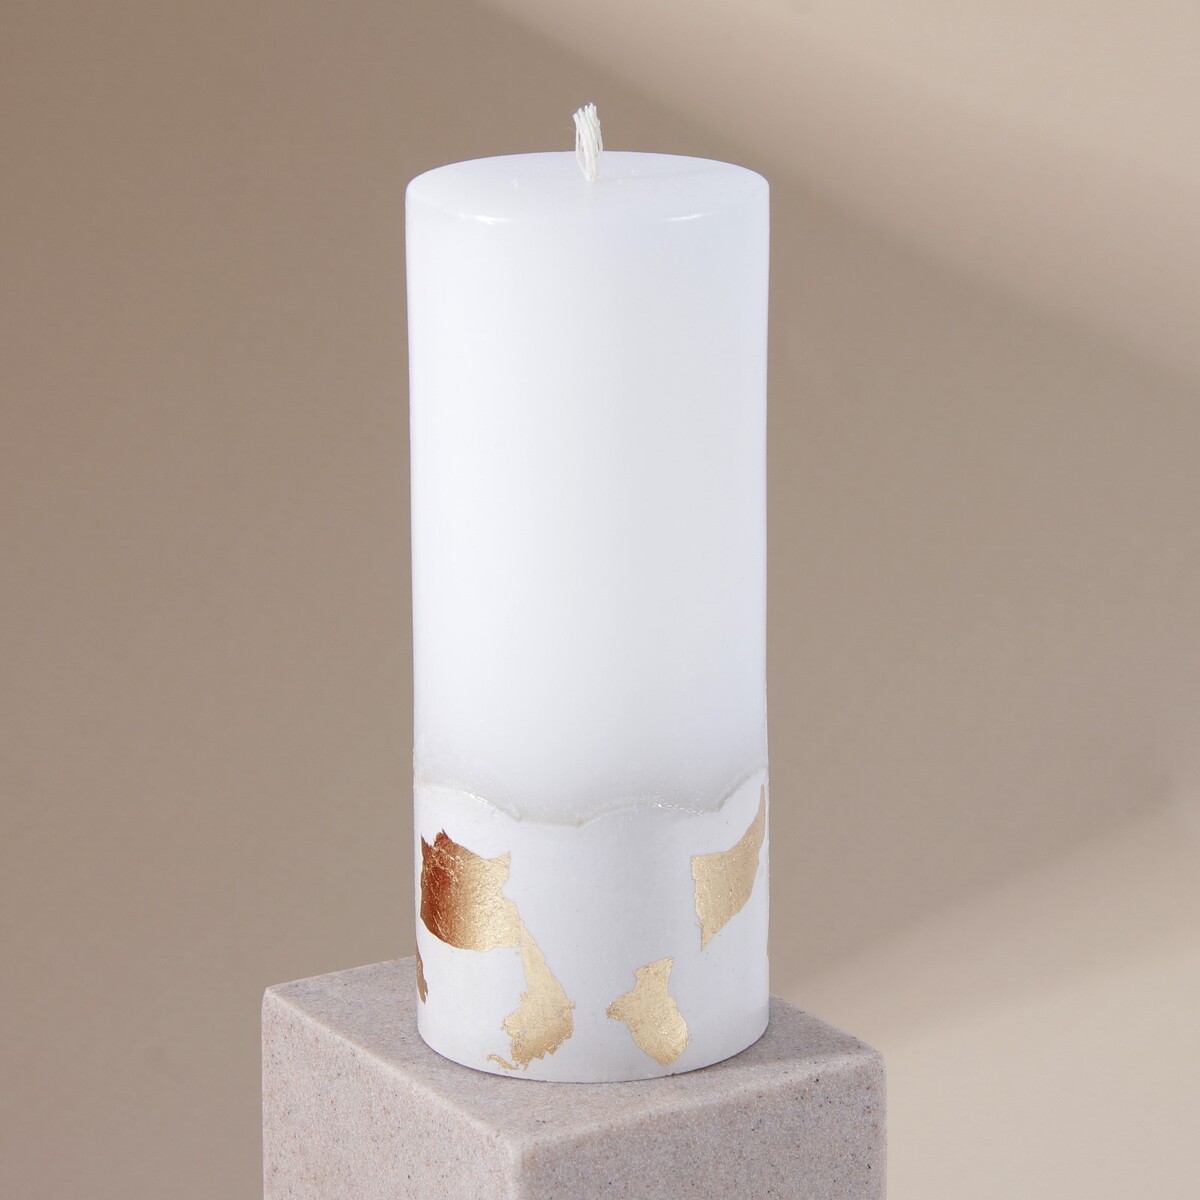 Свеча интерьерная белая с бетоном (поталь), 15 х 6 см свеча интерьерная белая с бетоном поталь 9 5 х 6 см